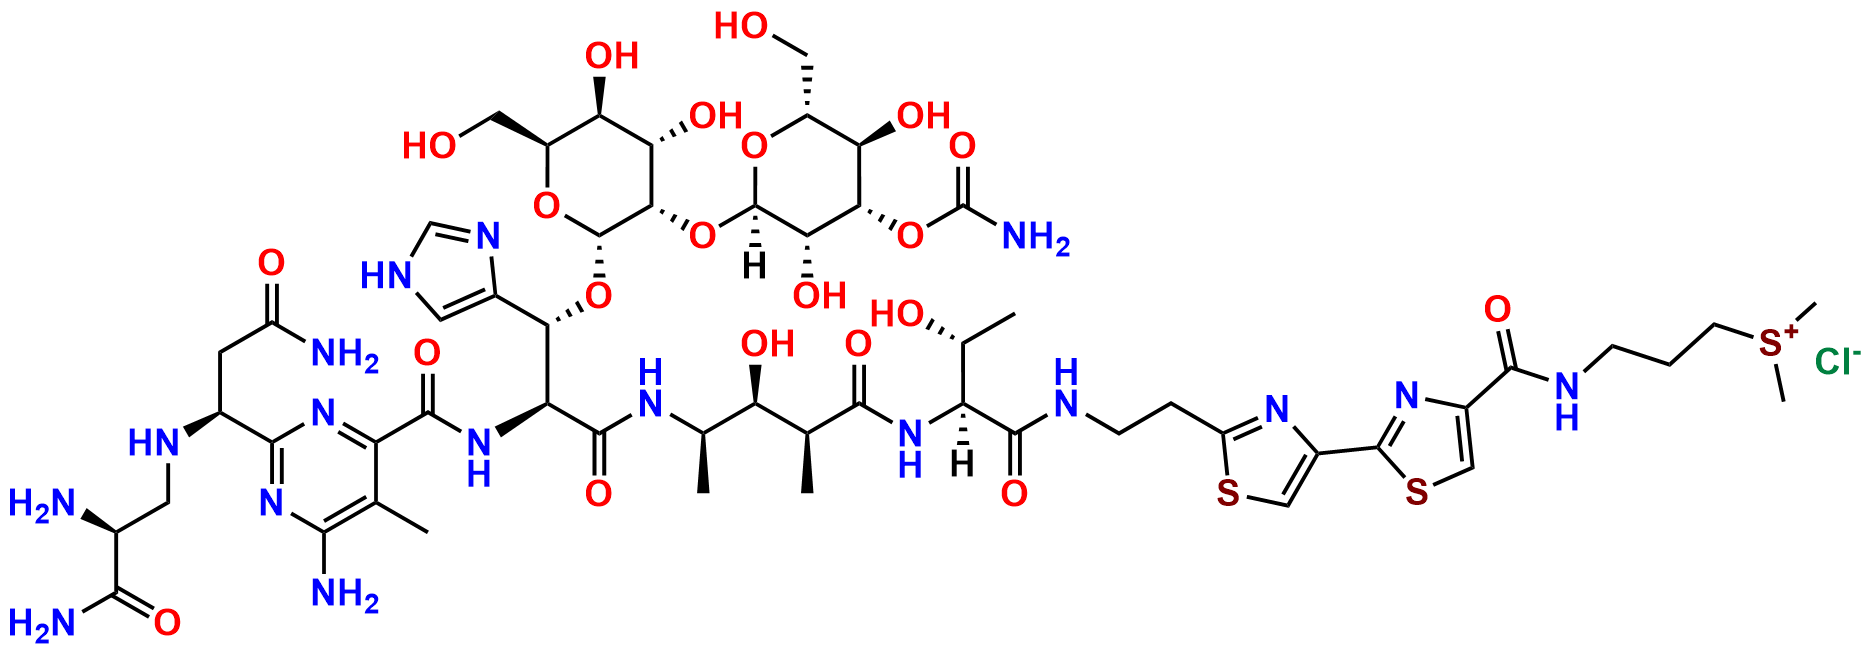 Bleomycin A2